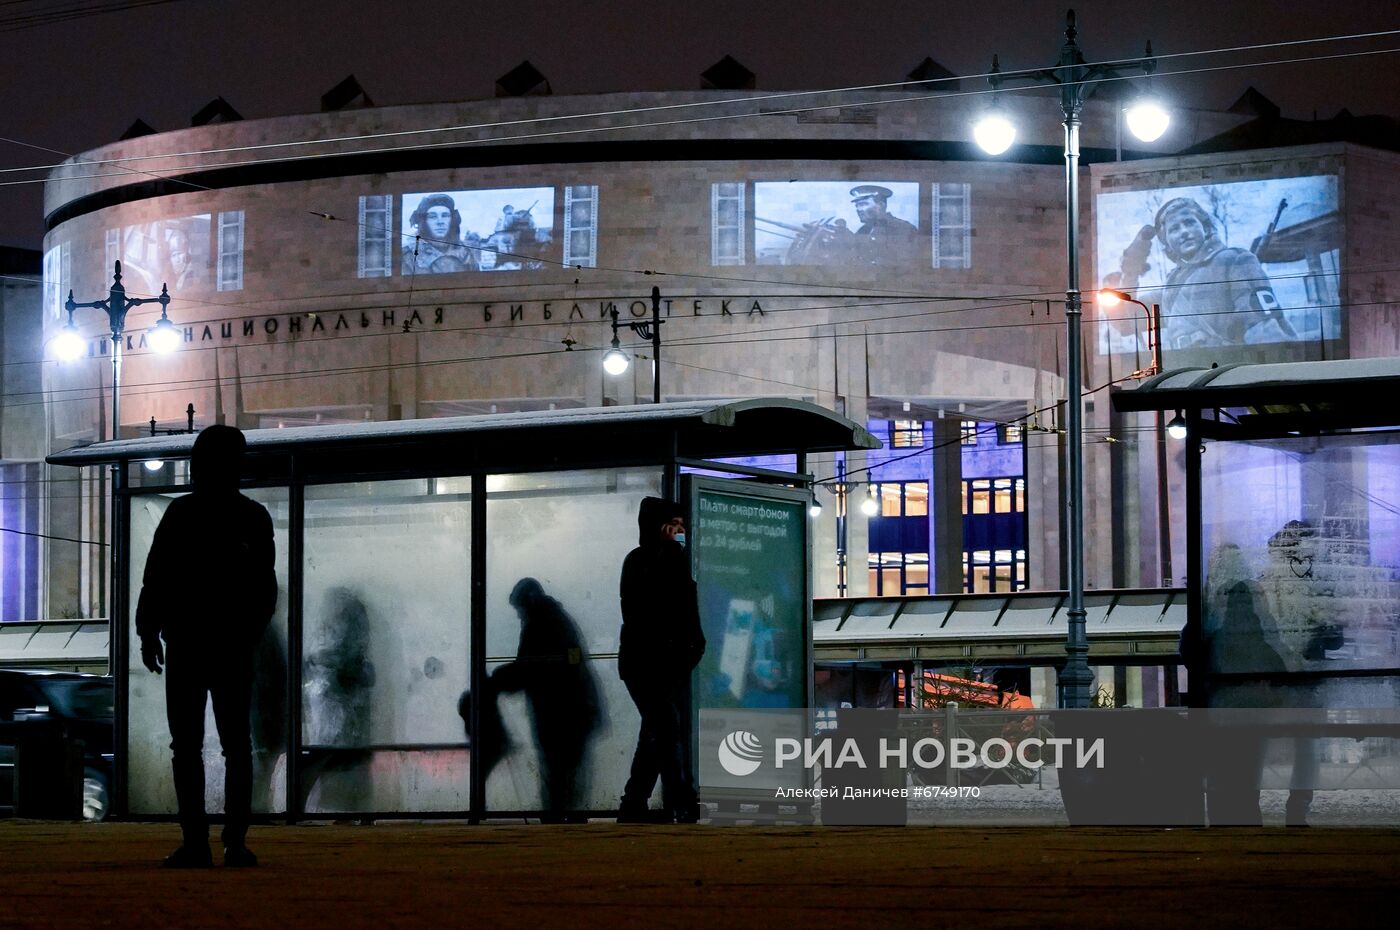 Световые проекции на зданиях в Санкт-Петербурге к годовщине освобождения Ленинграда от блокады